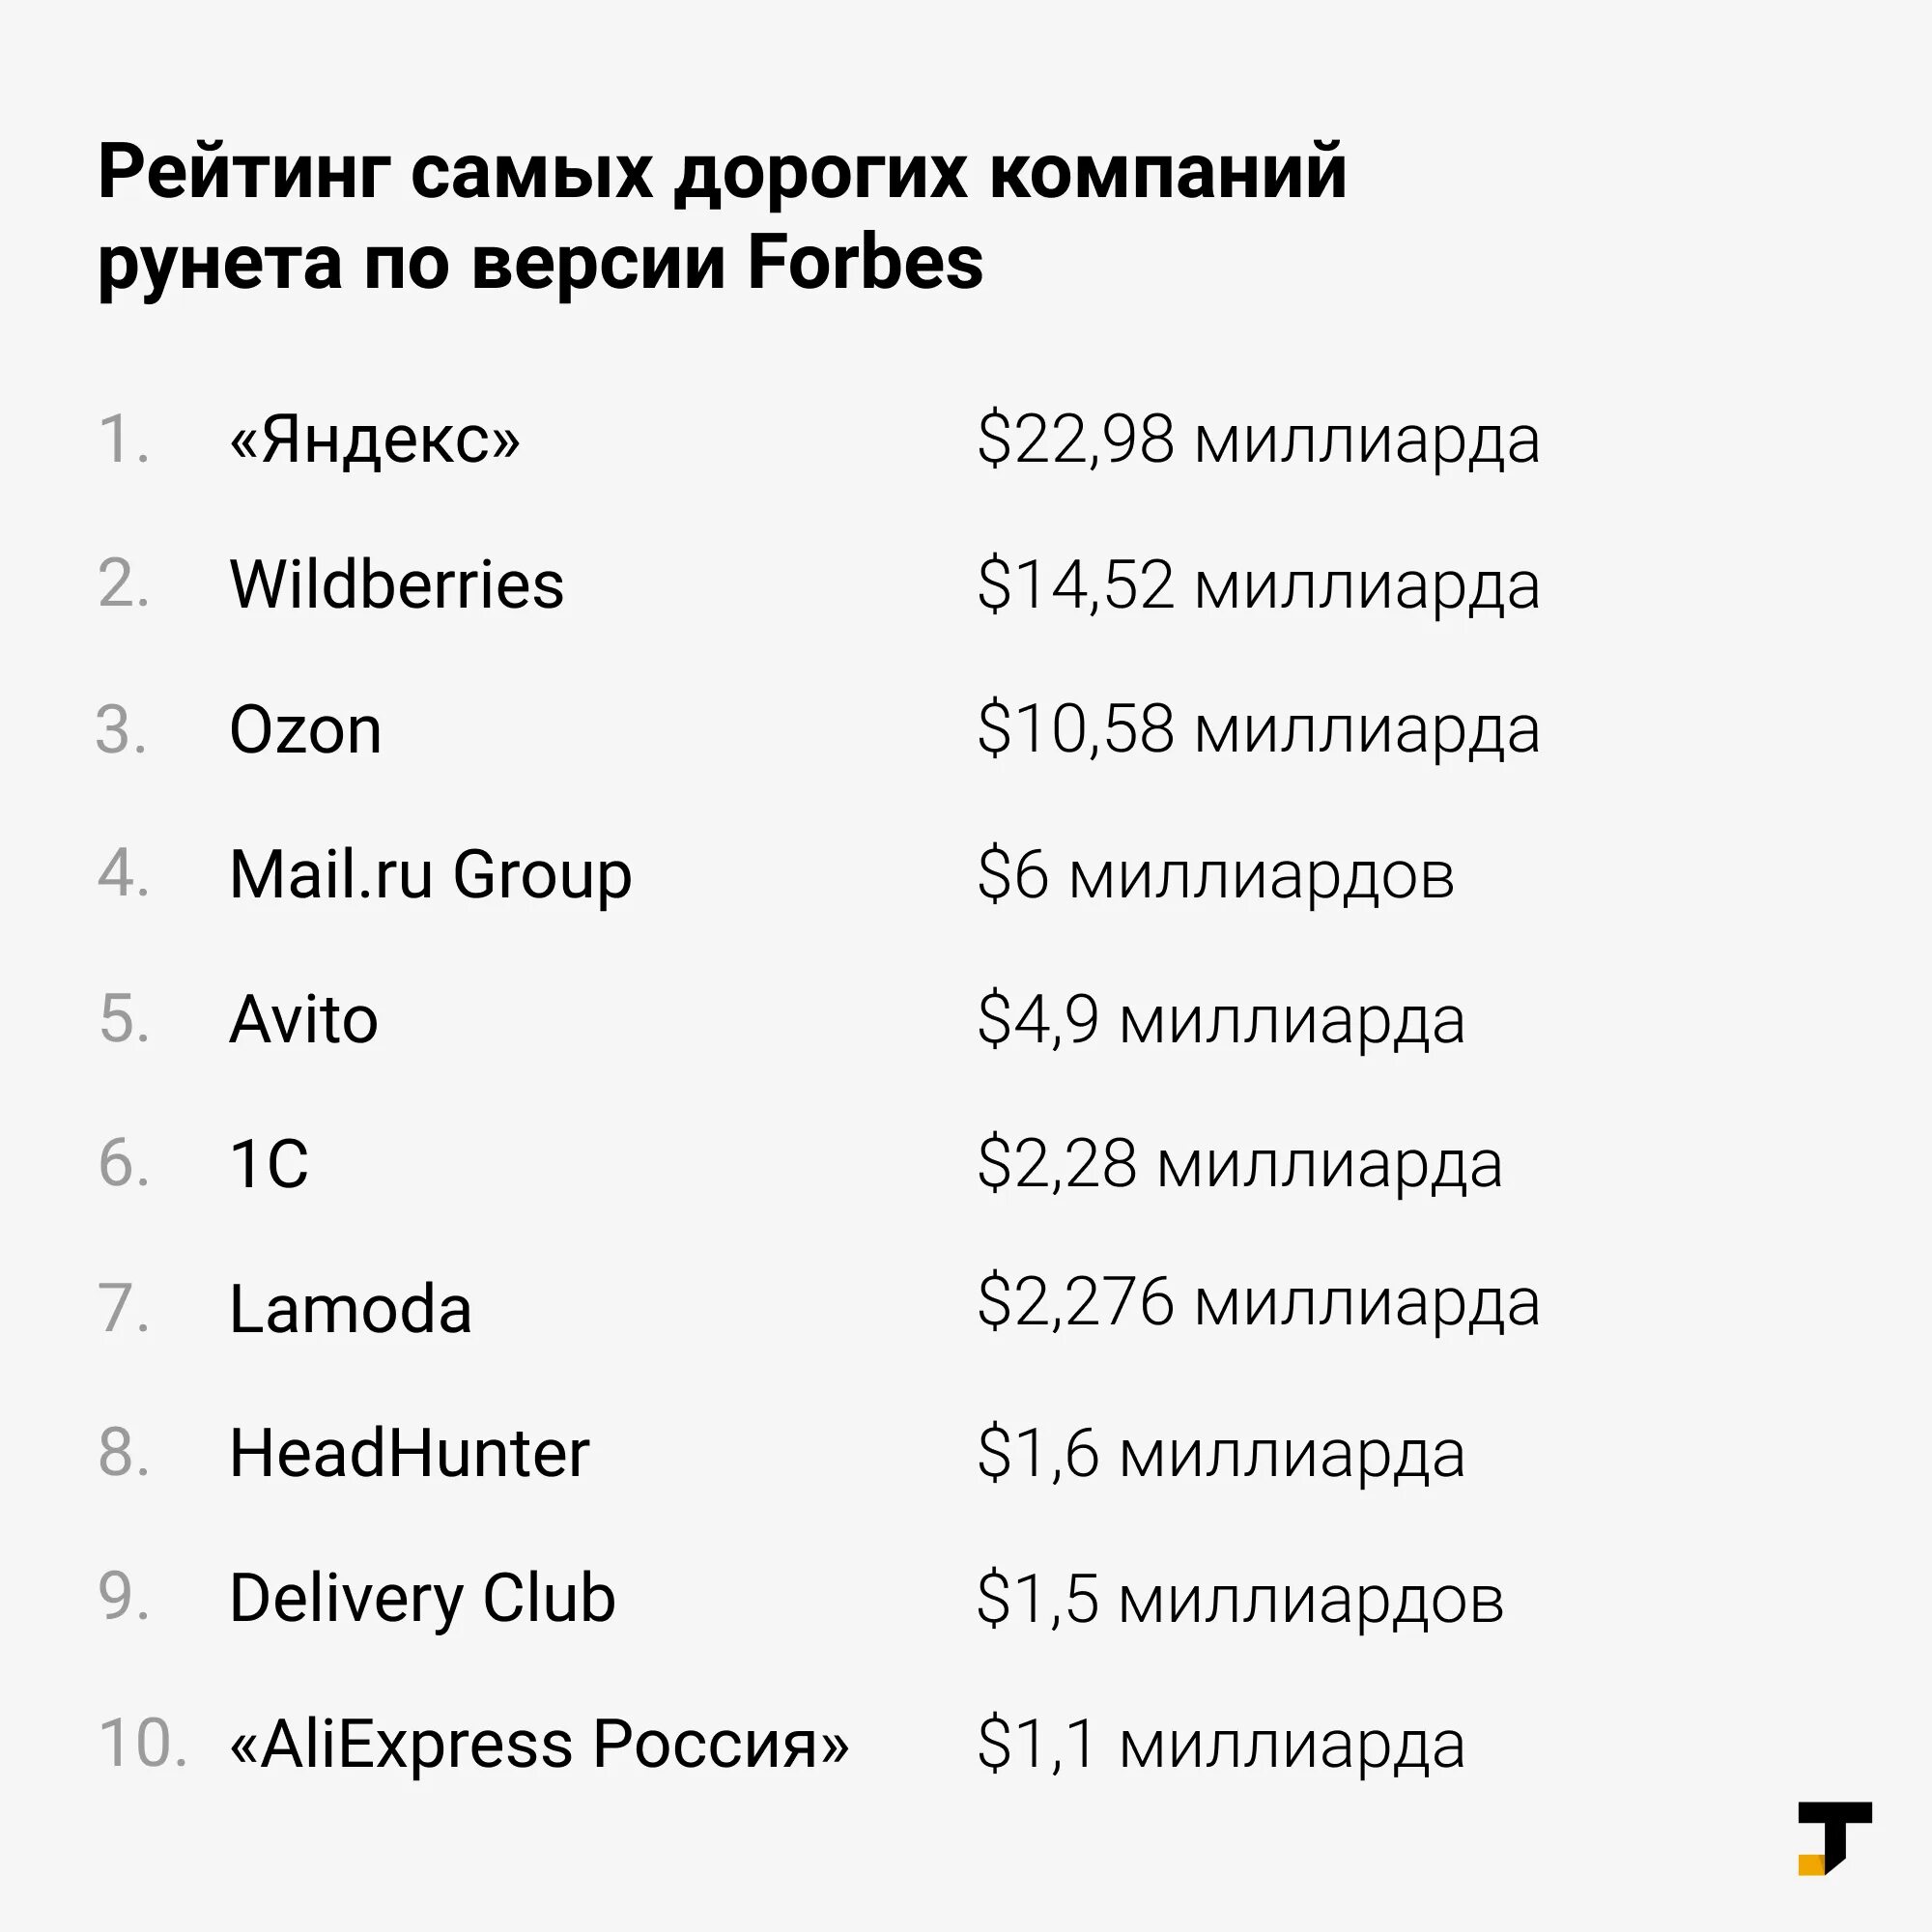 Самый дорогой код. Самые дорогие компании рунета. 20 Самых дорогих компаний рунета. 30 Самых дорогих компаний рунета. Список самых дорогих компаний.